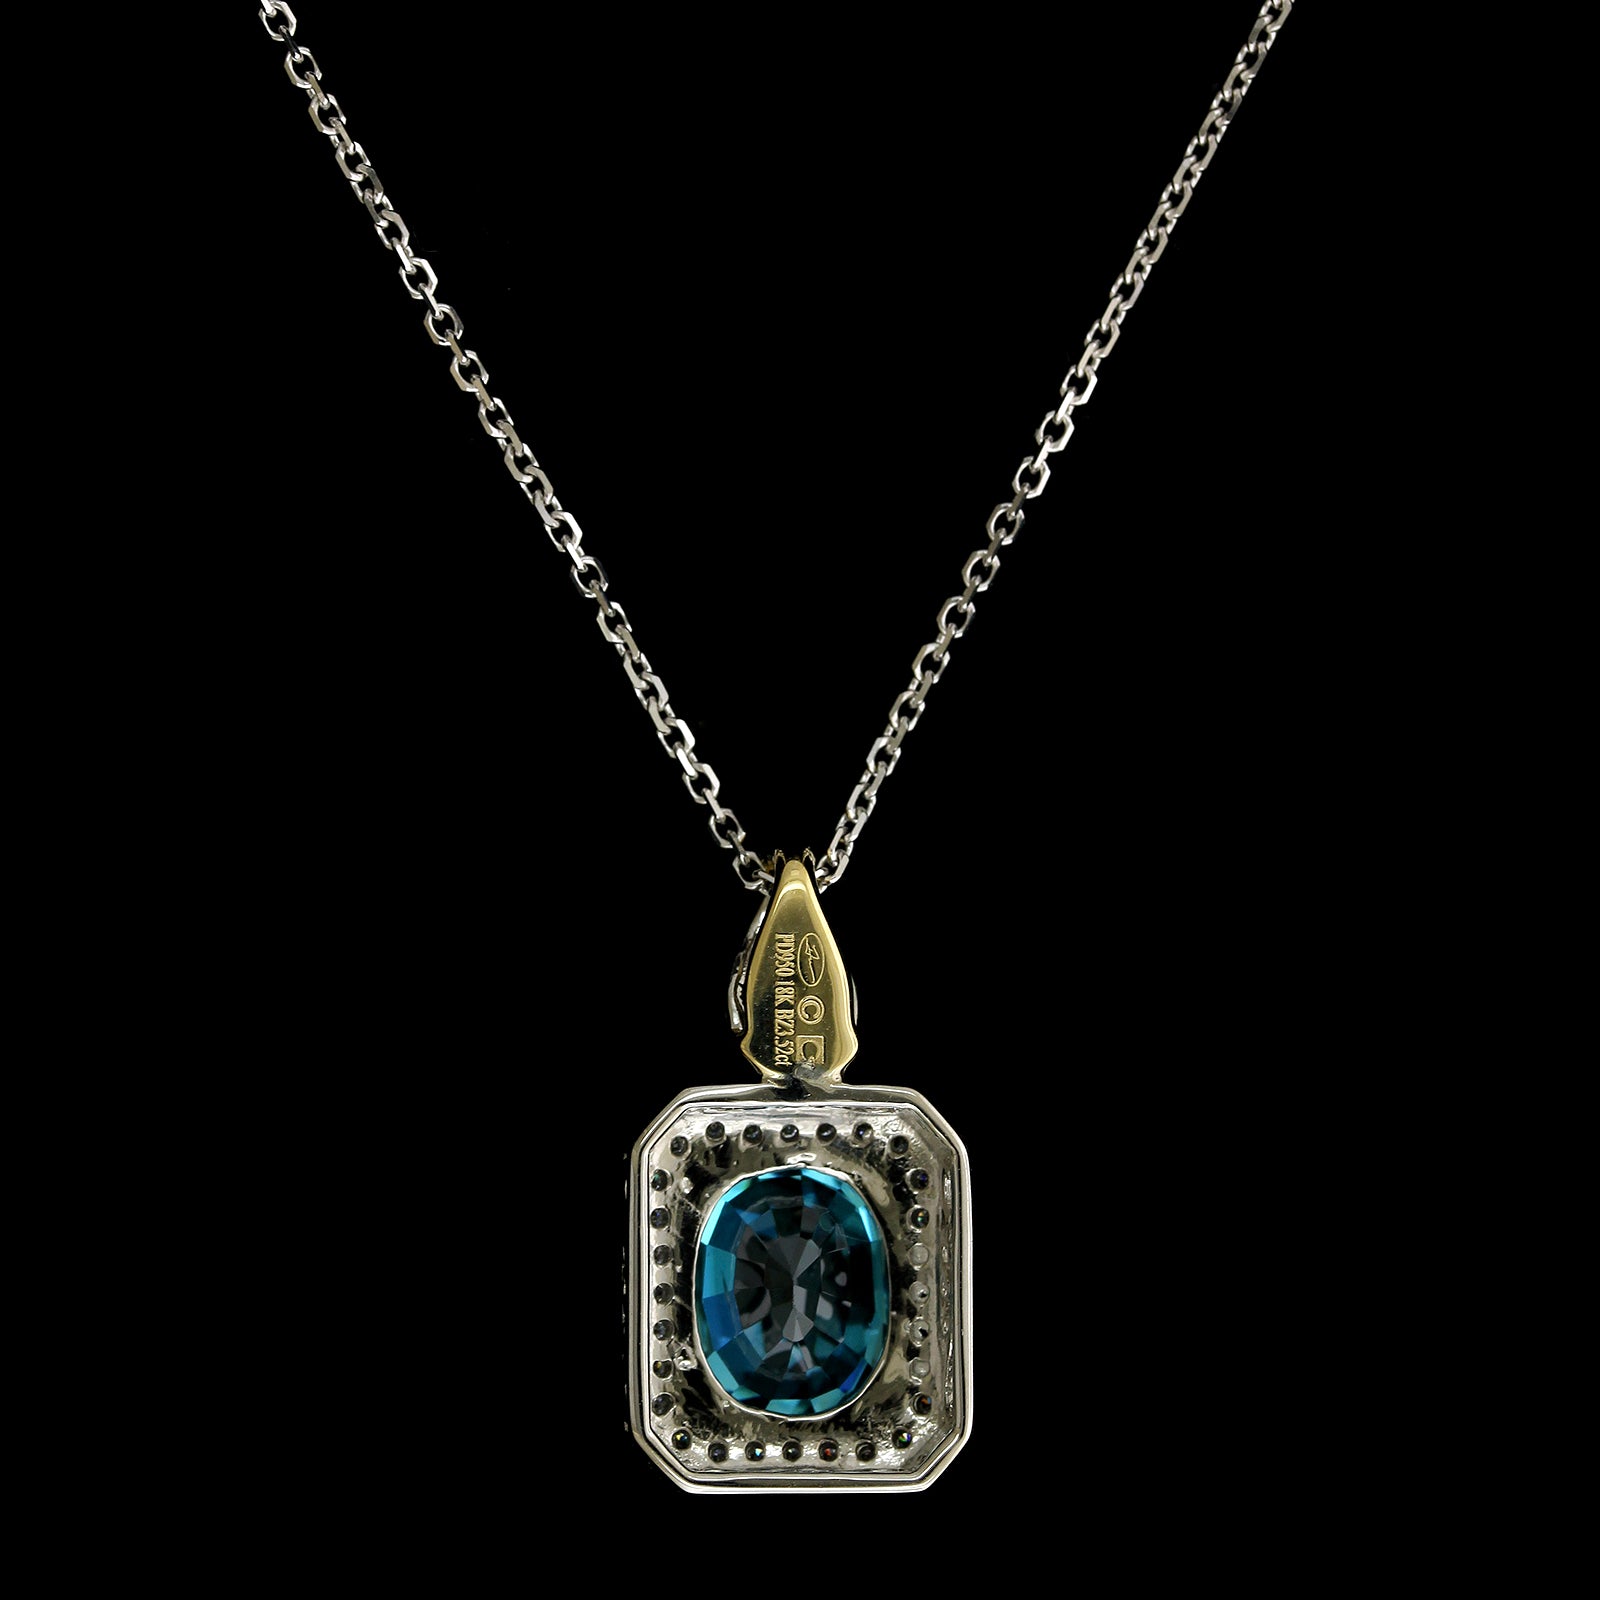 18K Two Tone Gold Estate Blue Zircon Tanzanite and Diamond Pendant Necklace